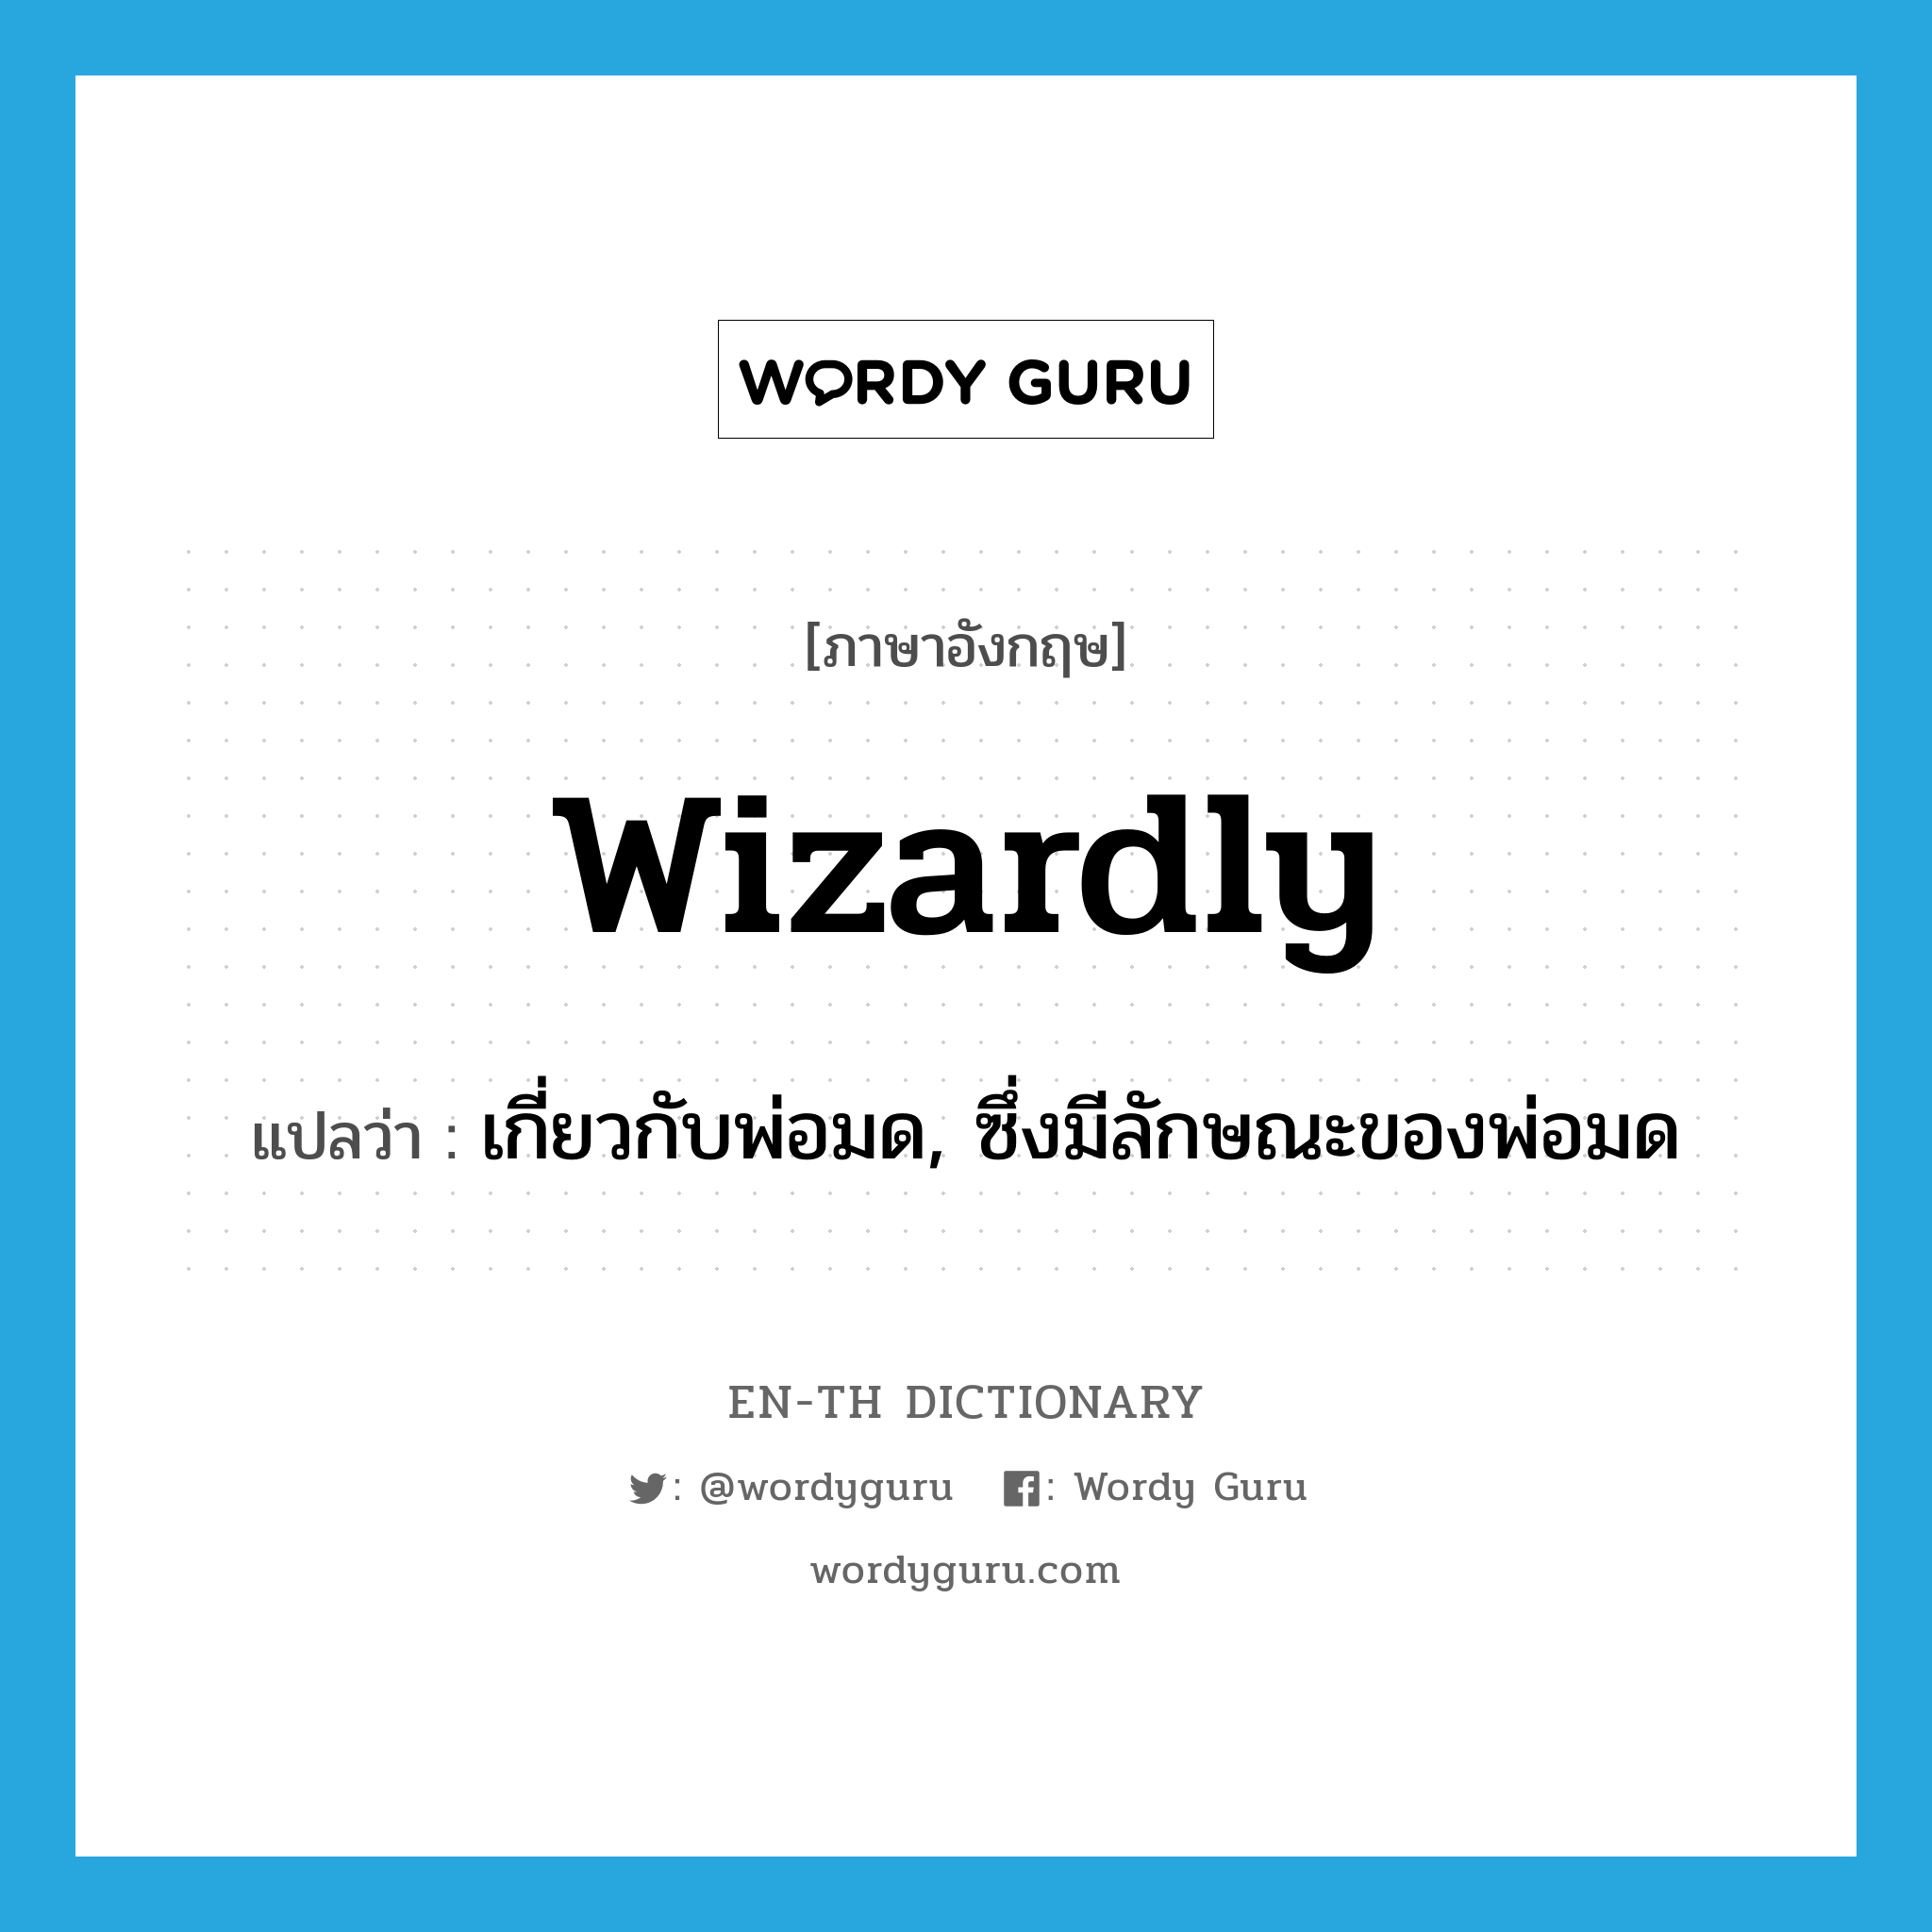 wizardly แปลว่า?, คำศัพท์ภาษาอังกฤษ wizardly แปลว่า เกี่ยวกับพ่อมด, ซึ่งมีลักษณะของพ่อมด ประเภท ADJ หมวด ADJ